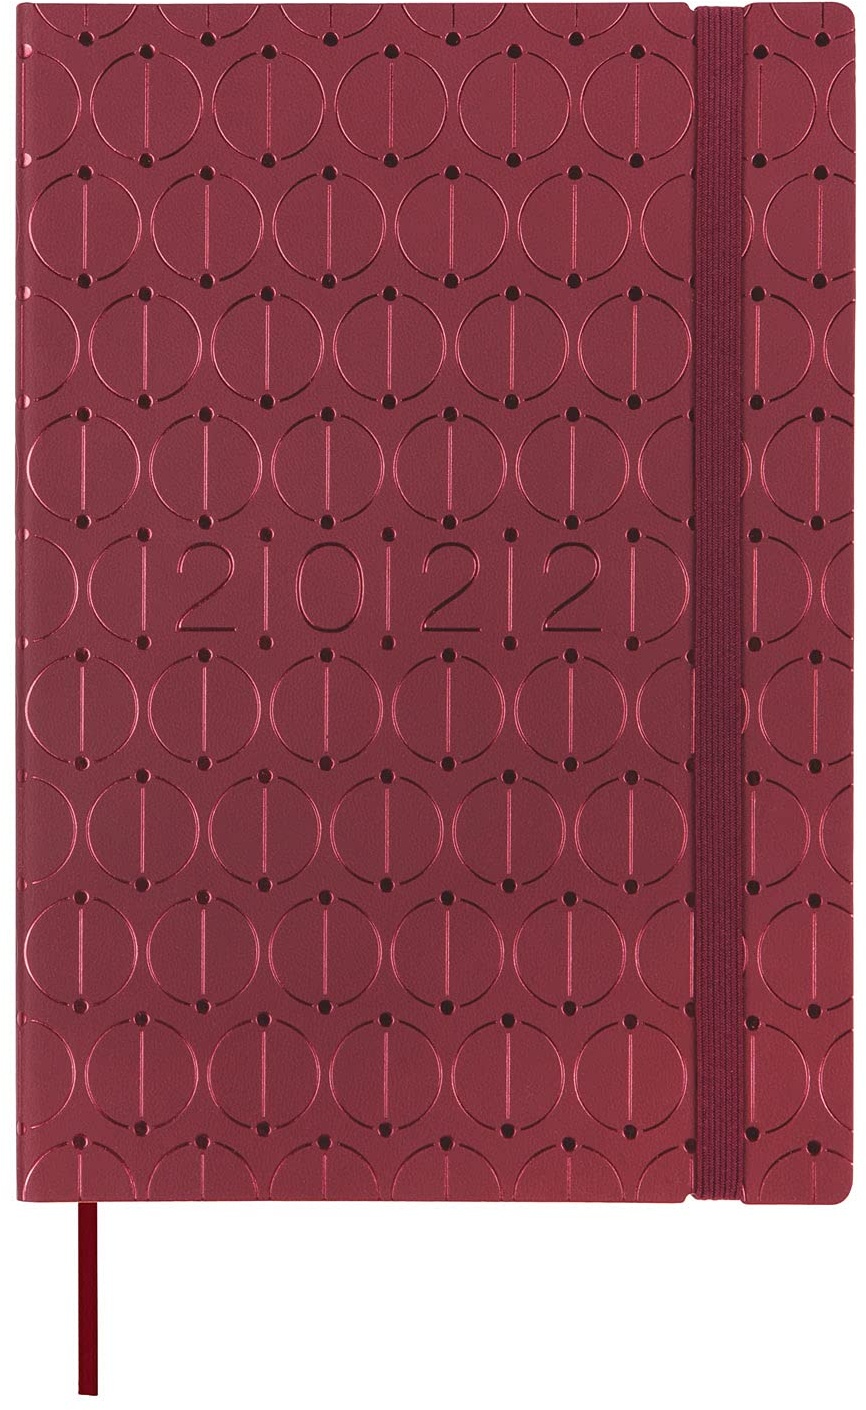 Finocam - Kalender 2022, 1 Tag, von Januar 2022 bis Dezember 2022 (12 Monate) Y10 - 140 x 204 mm Dynamic Casual Bordeaux Katalanisch